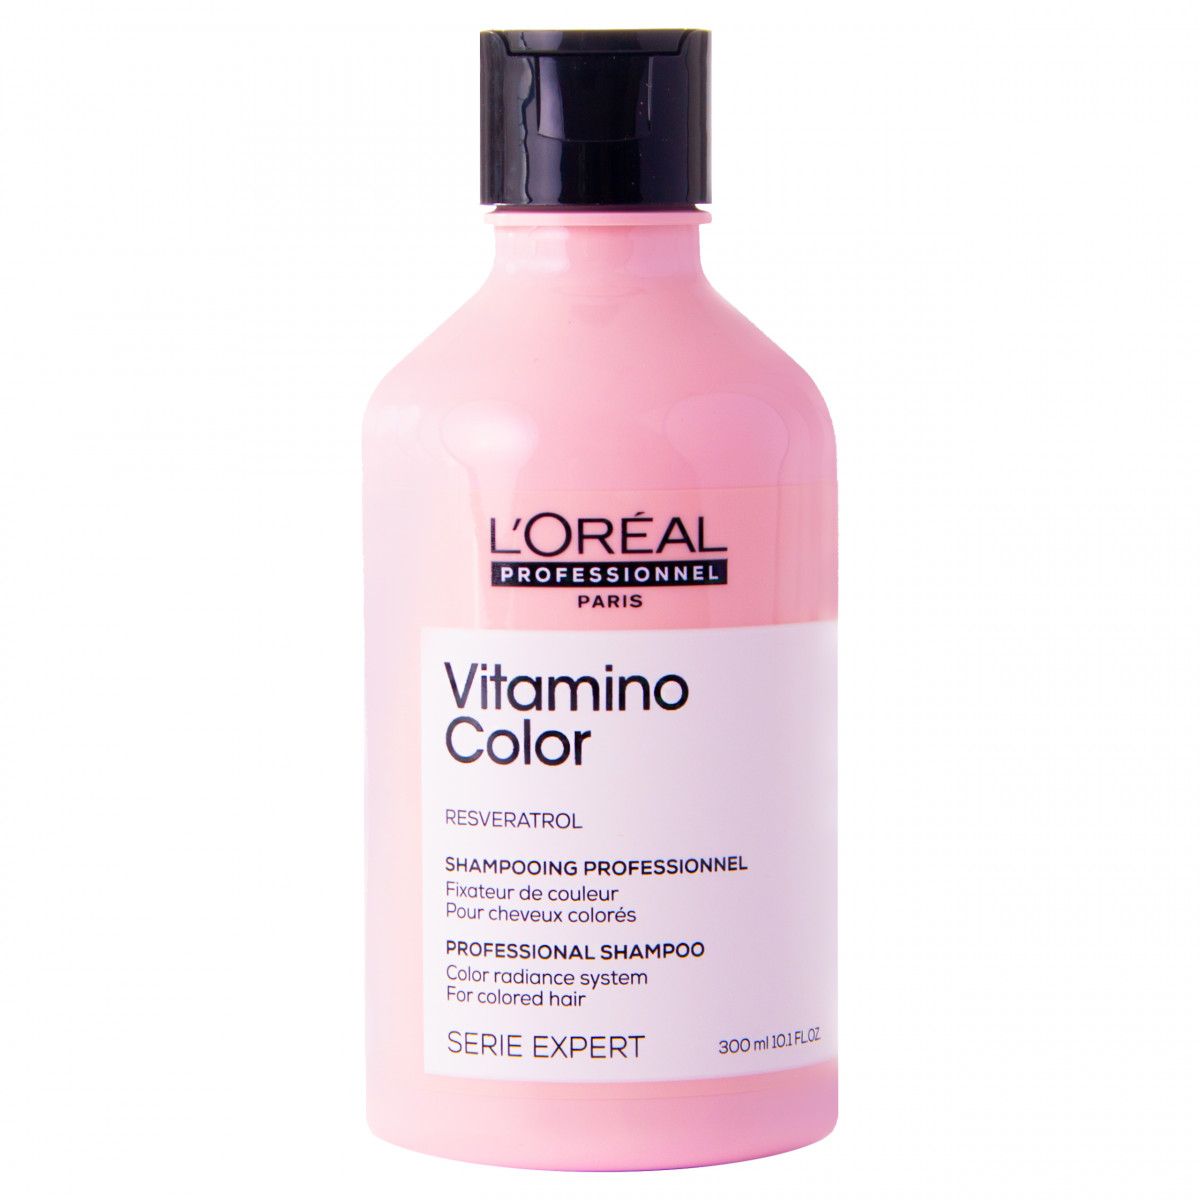 loreal szampon przyspieszający wypłukiwanie koloru